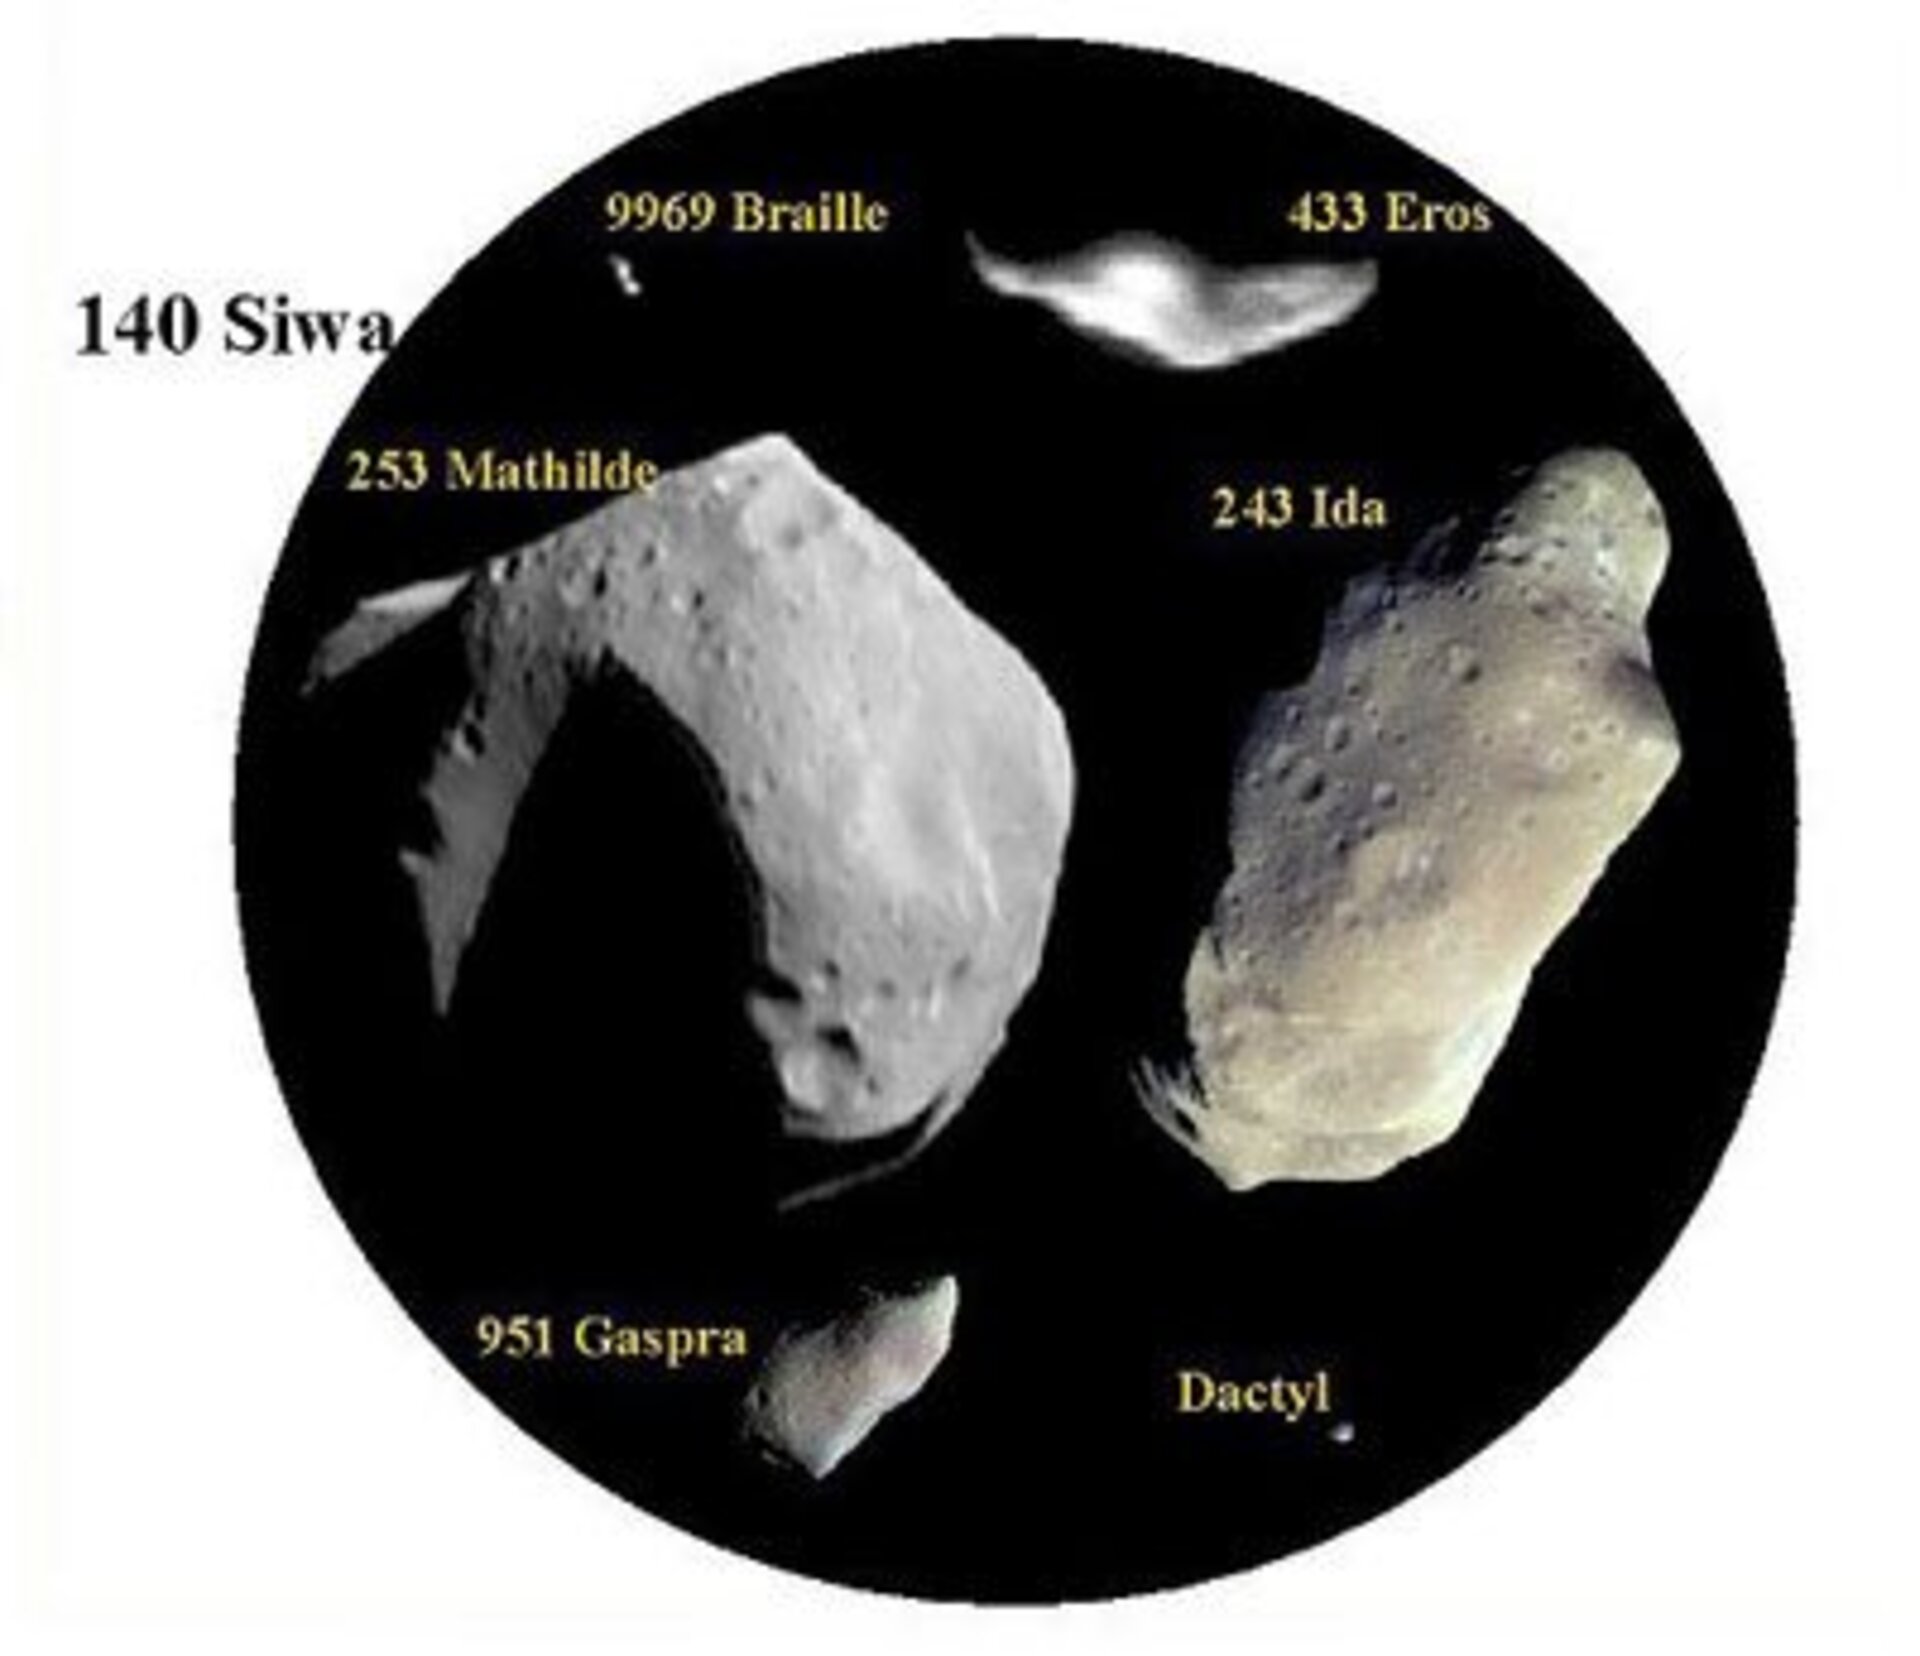 Les astéroïdes se présentent sous plusieurs formes et dimensions